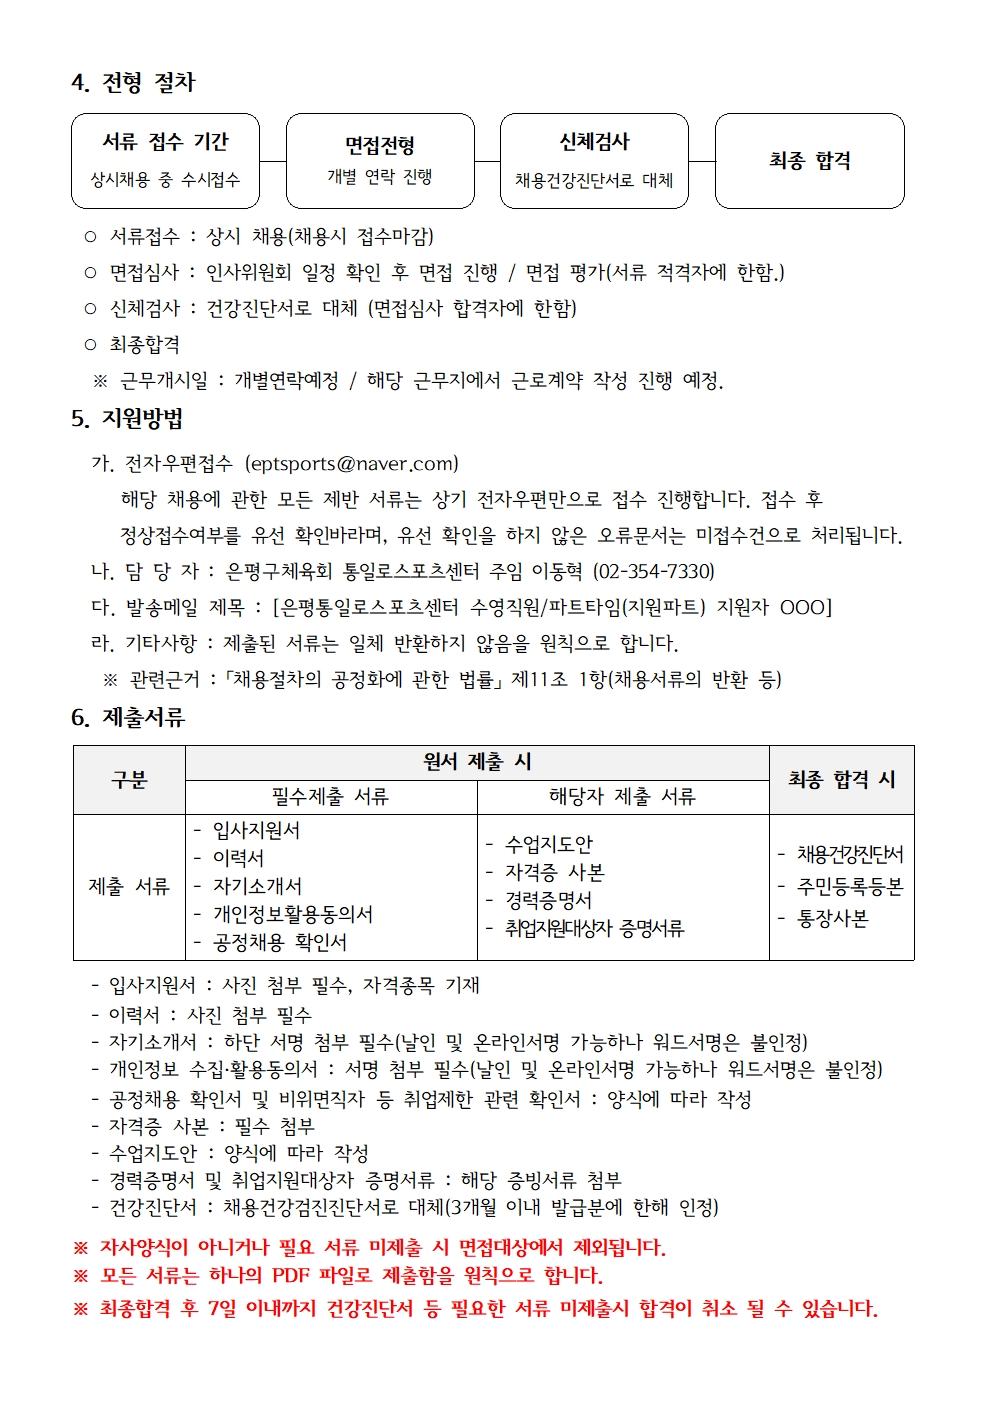 통일로스포츠센터 2023. 11월-2 수영 파트타임 상시 채용 공고문003.jpg